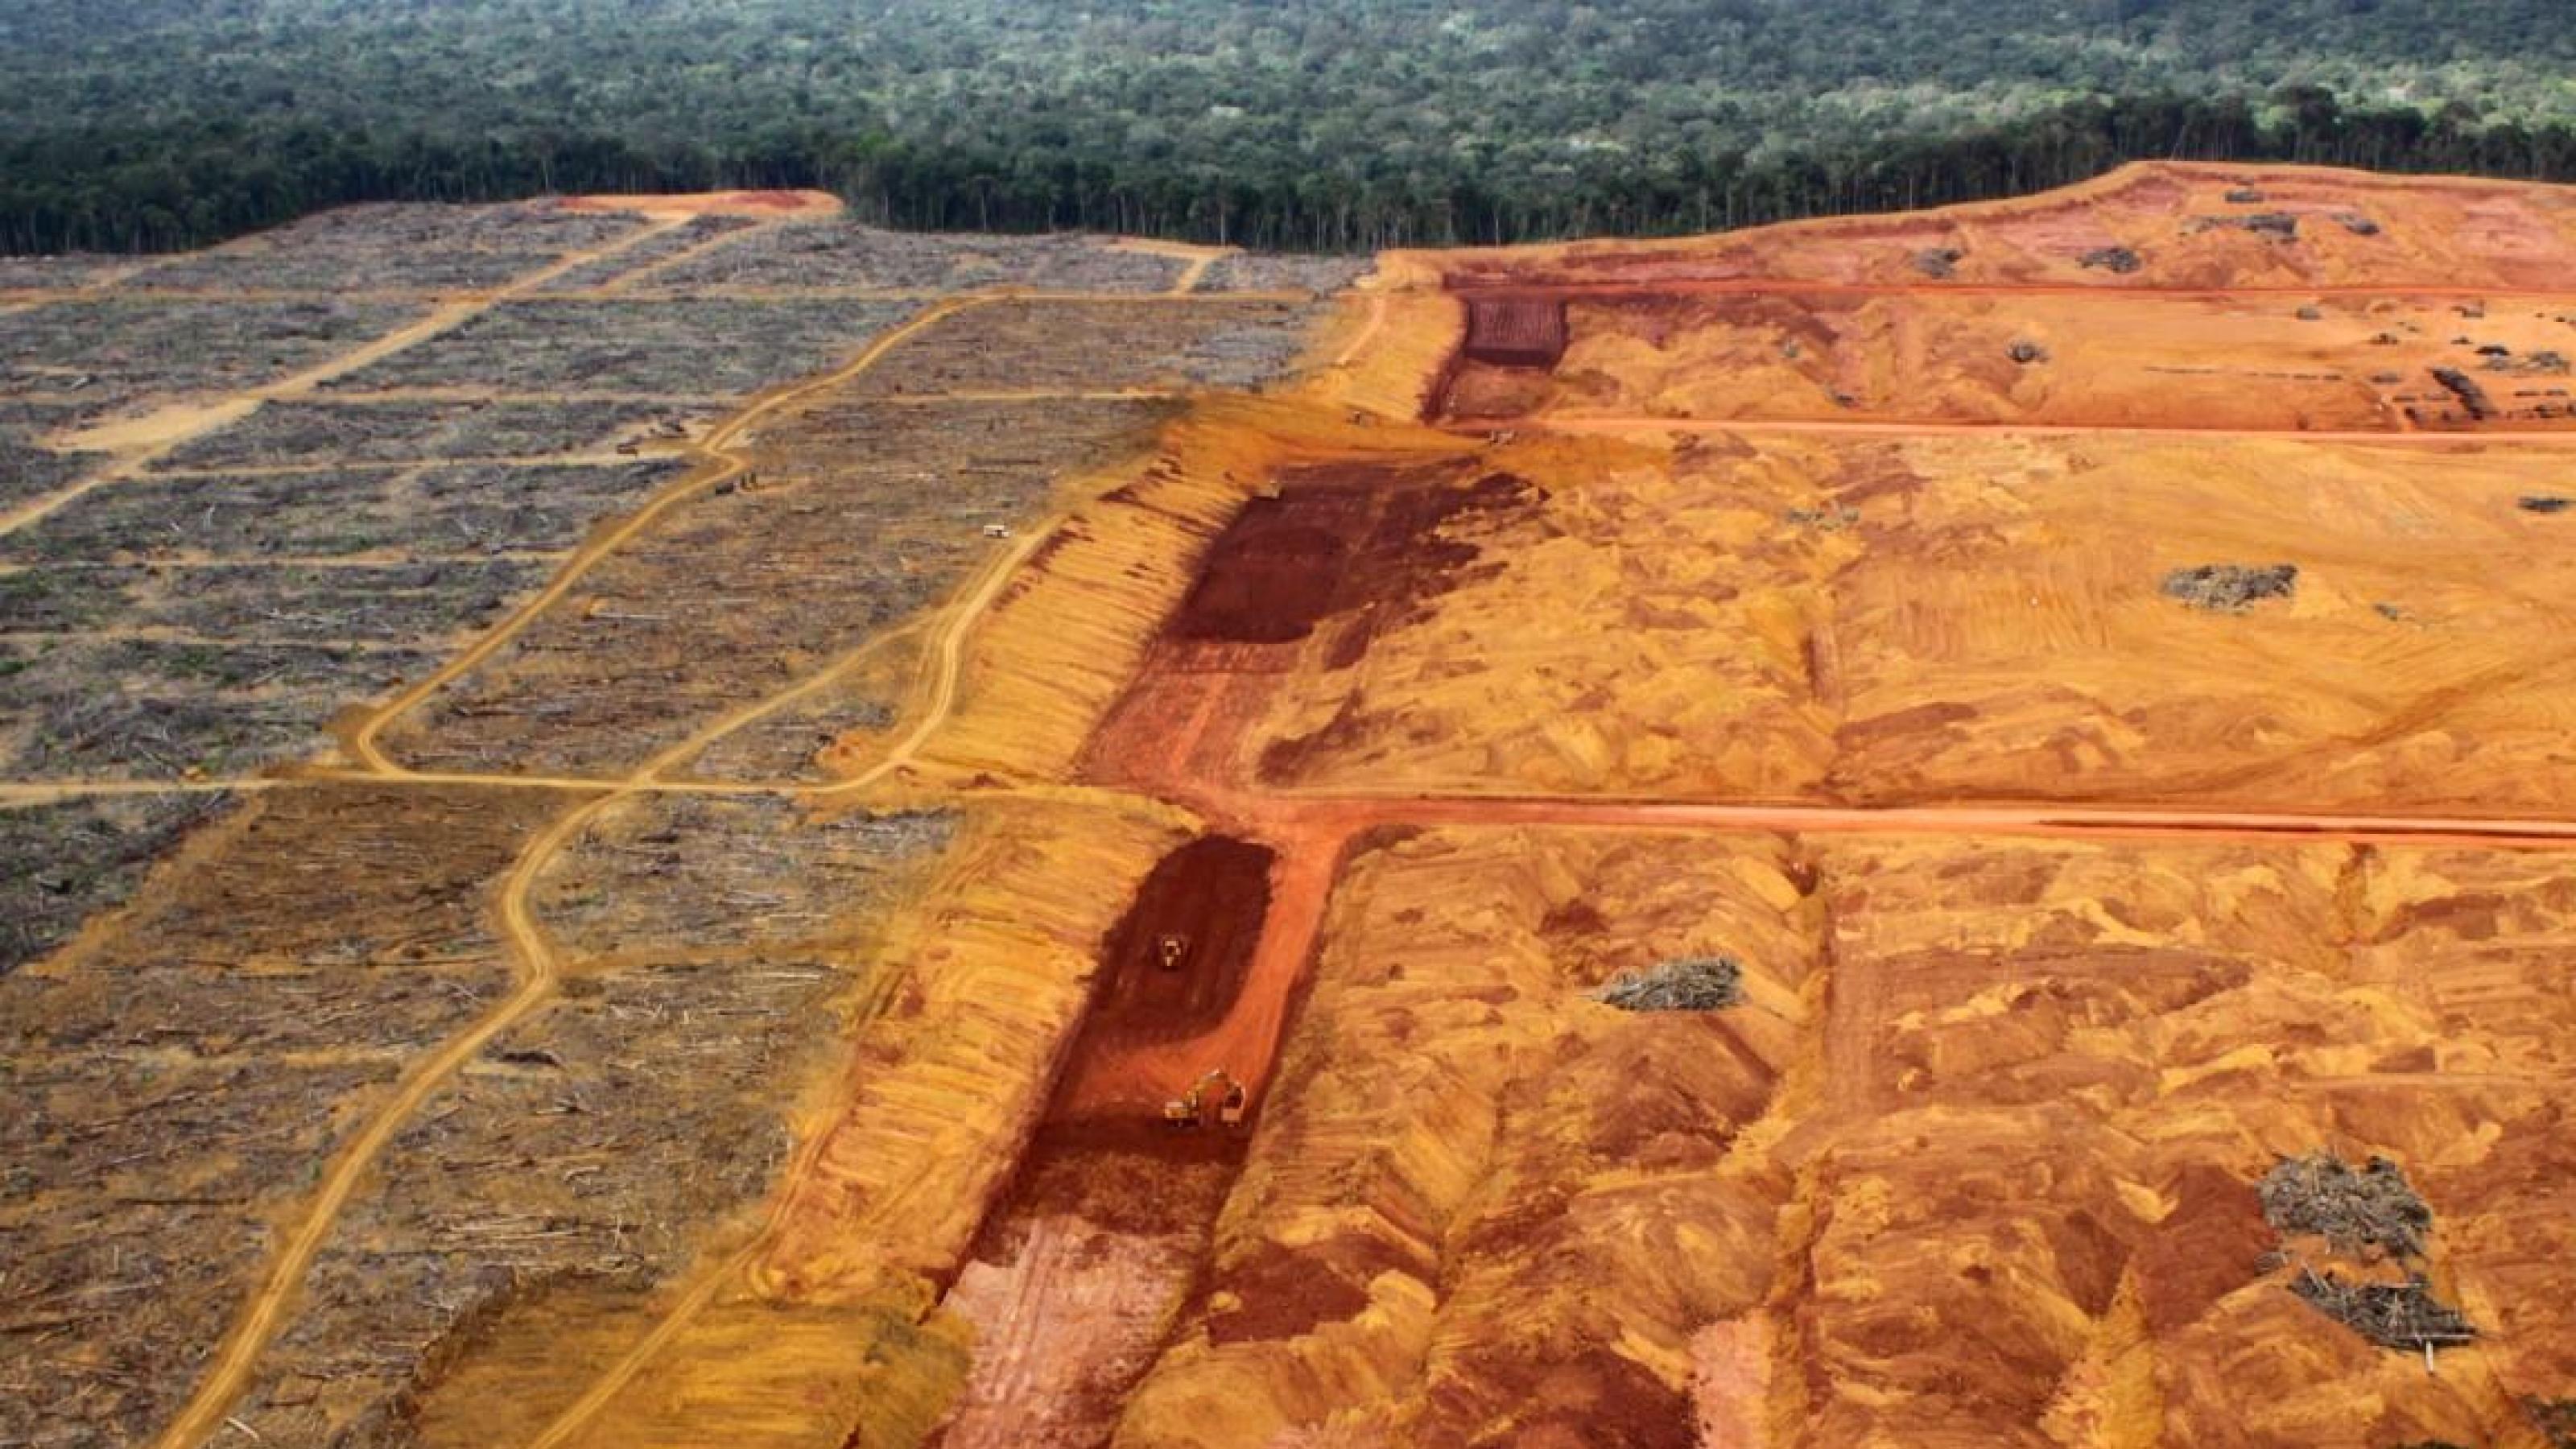 Riesige Flächen Amazonas-Regenwald sind gerodet, um das Erz Bauxit abzubauen. Daraus wird später Aluminium gewonnen.